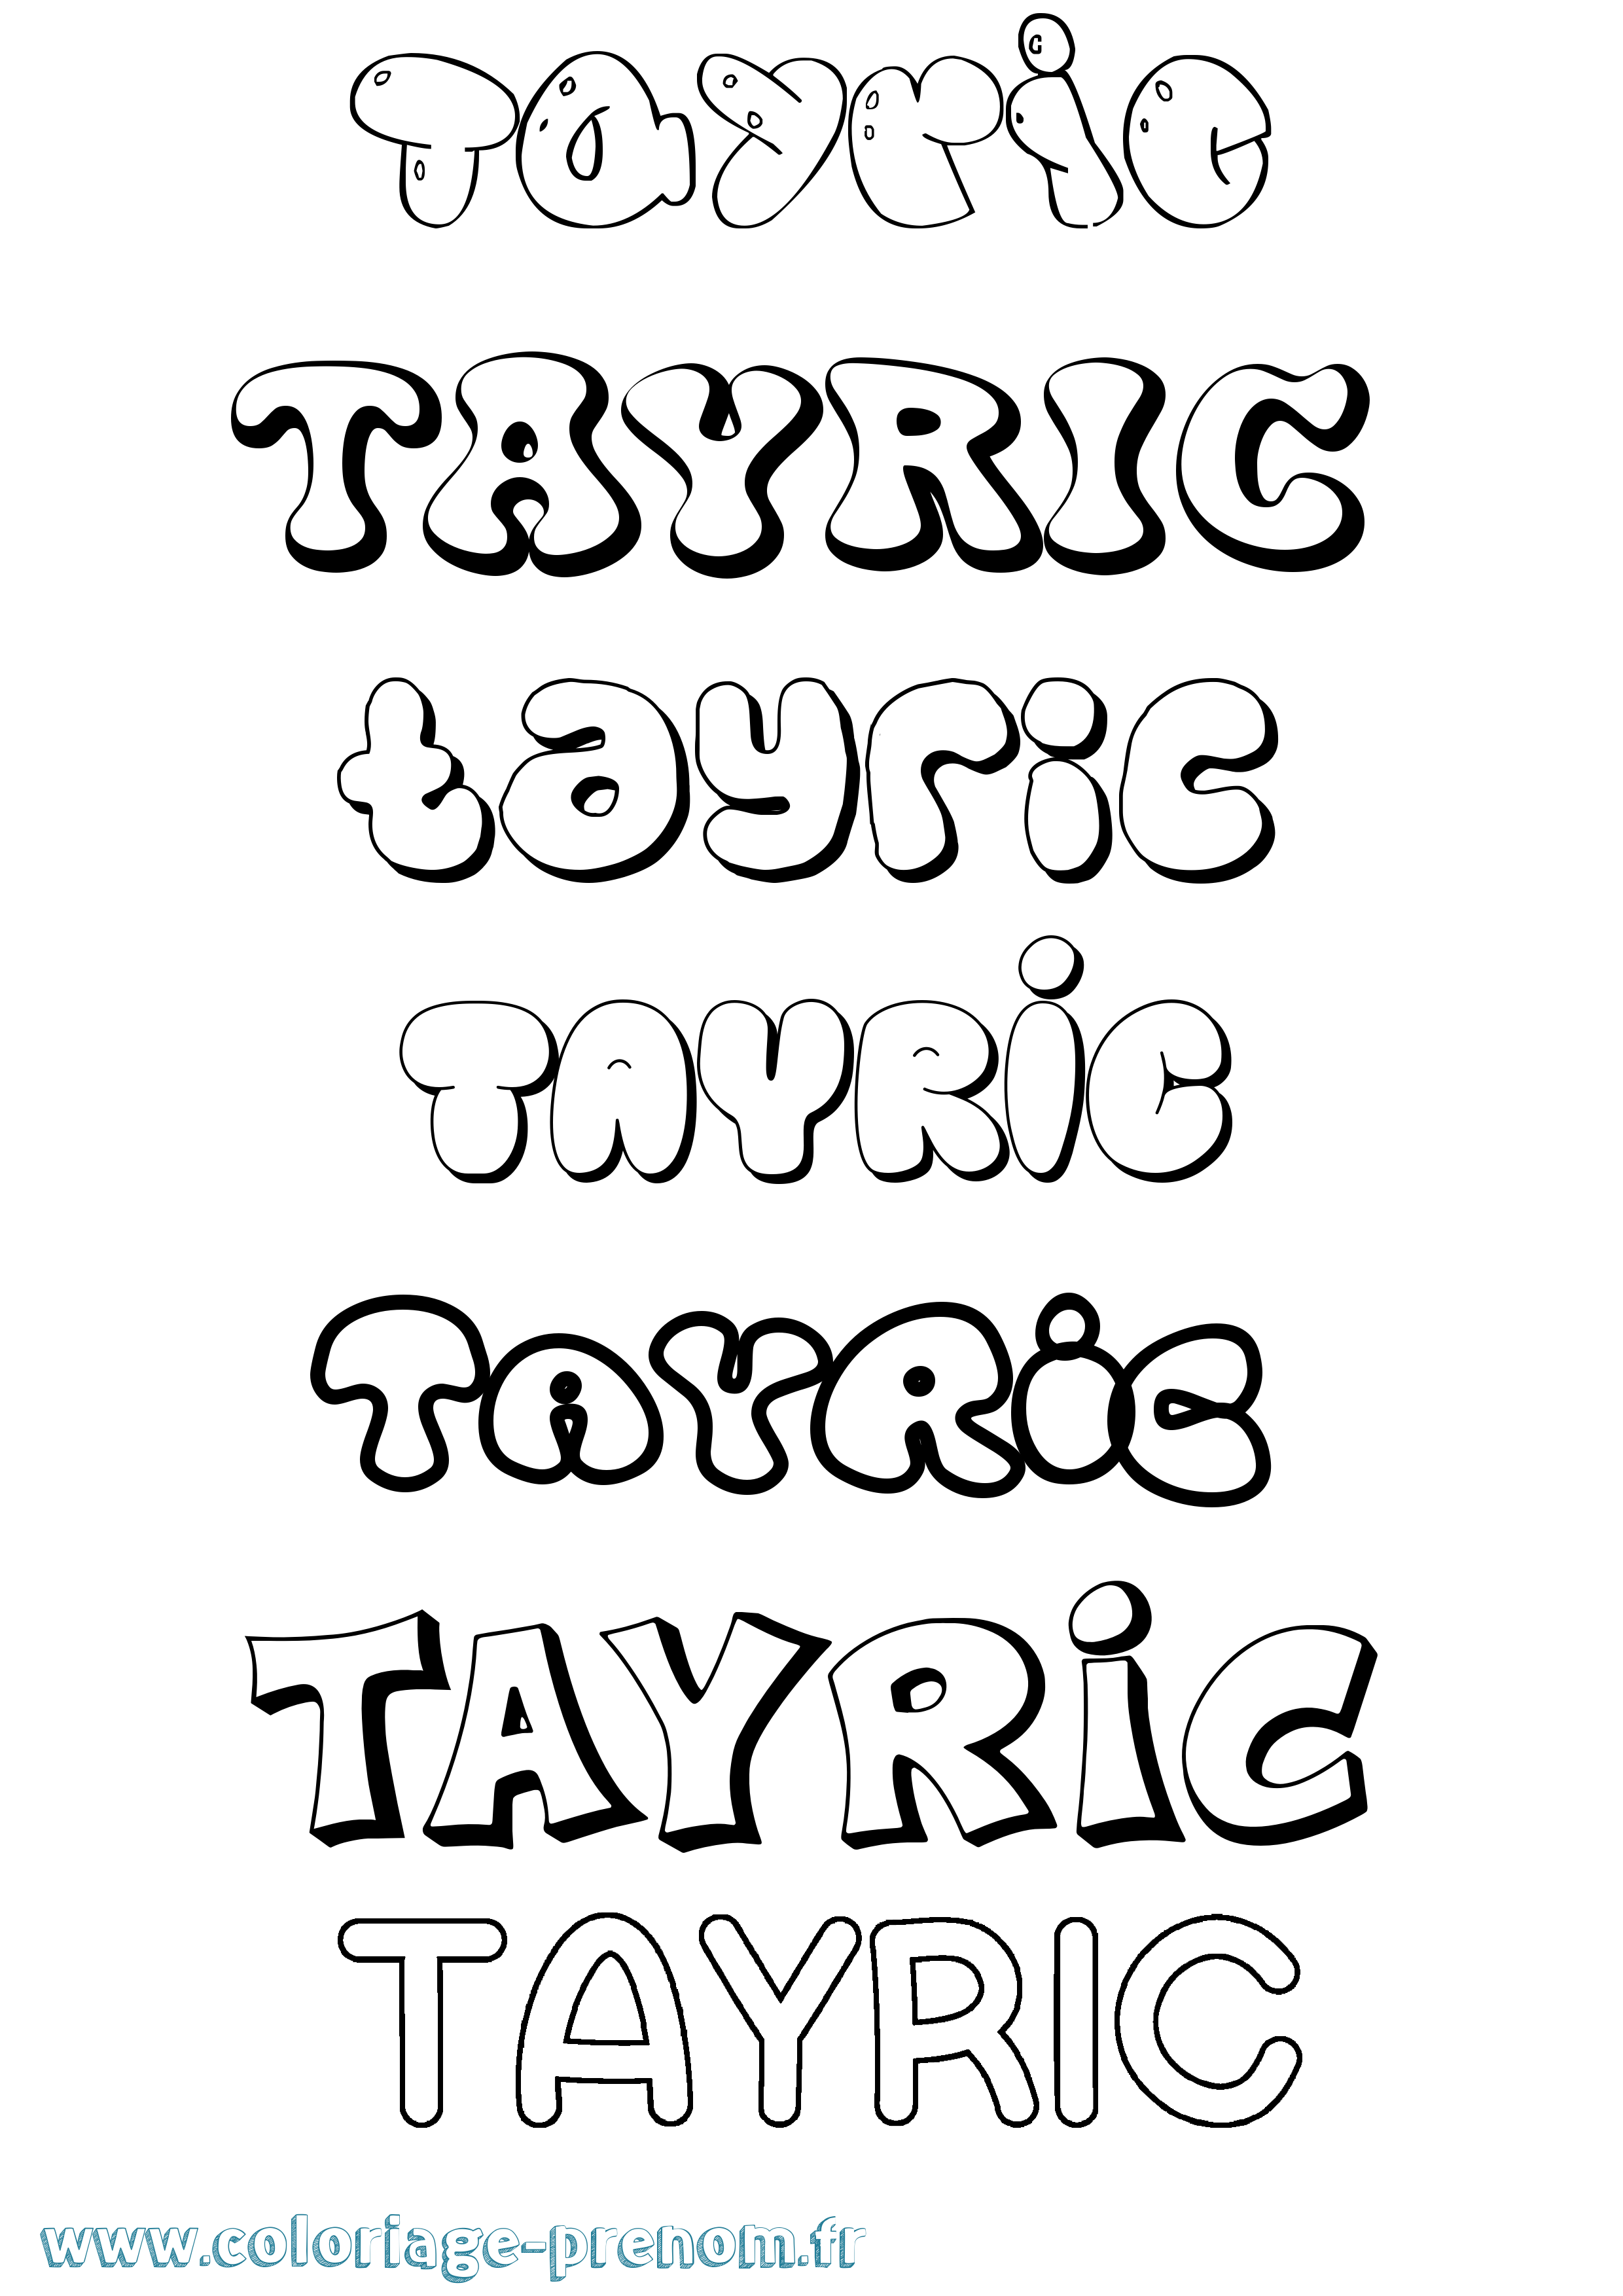 Coloriage prénom Tayric Bubble